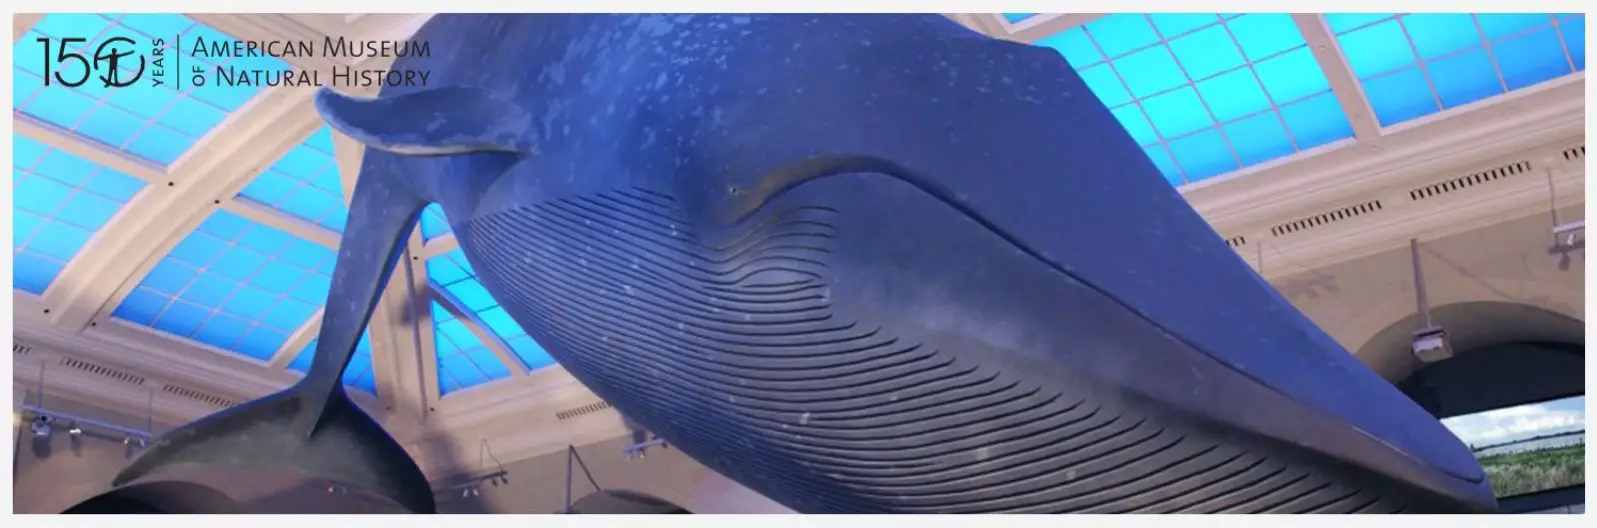 Baleia no Museu Americano de História Natural